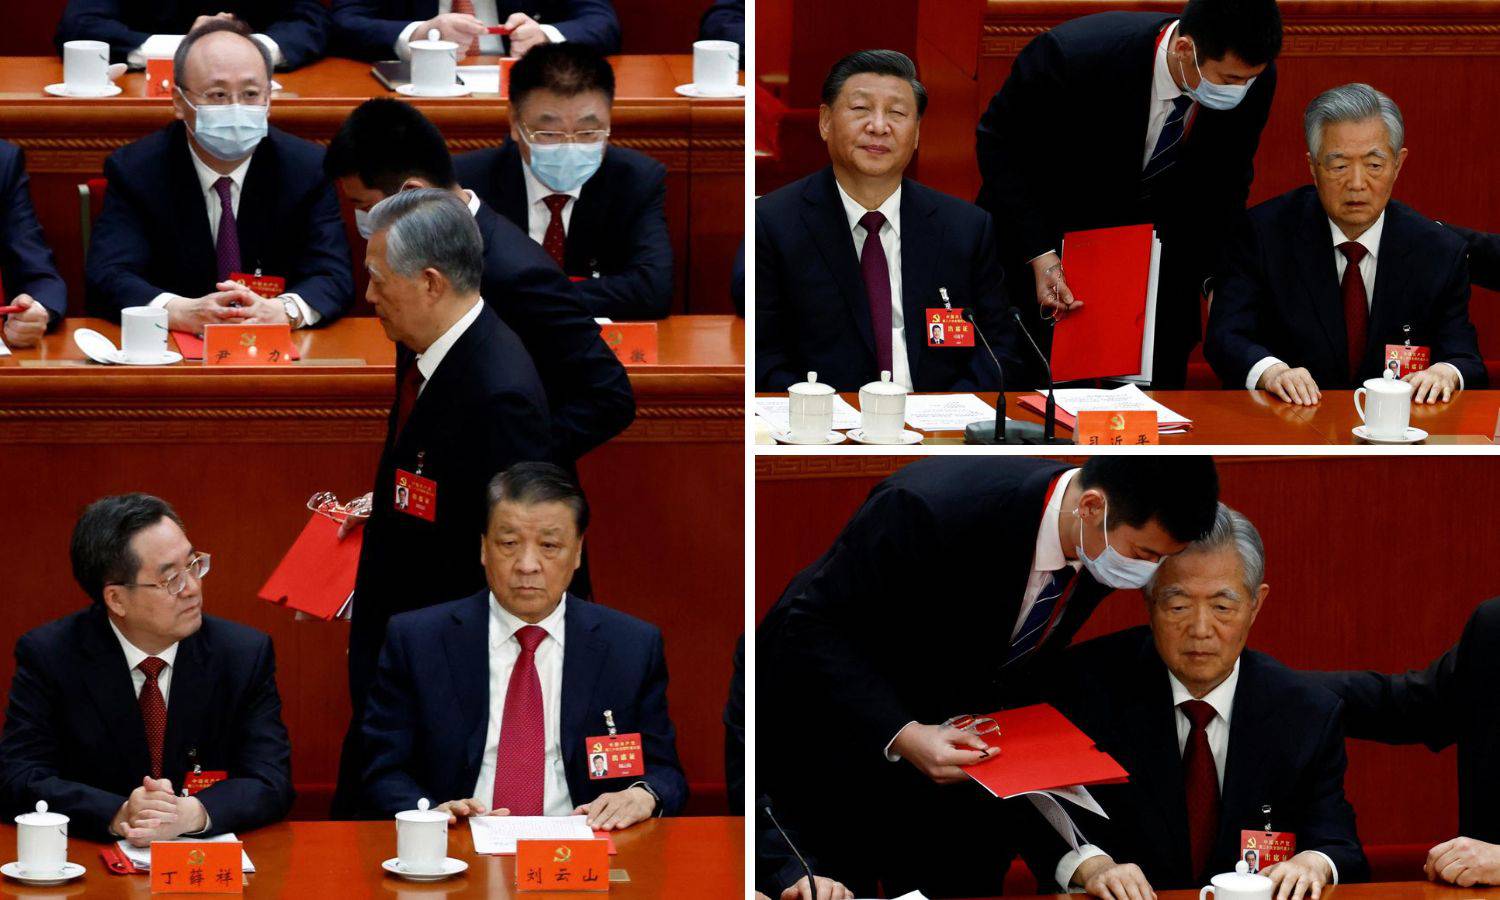 VIDEO Šokovi na komitetu: Hu Jintao 'ispraćen' iz dvorane, Xi Jinping sve to hladno gledao